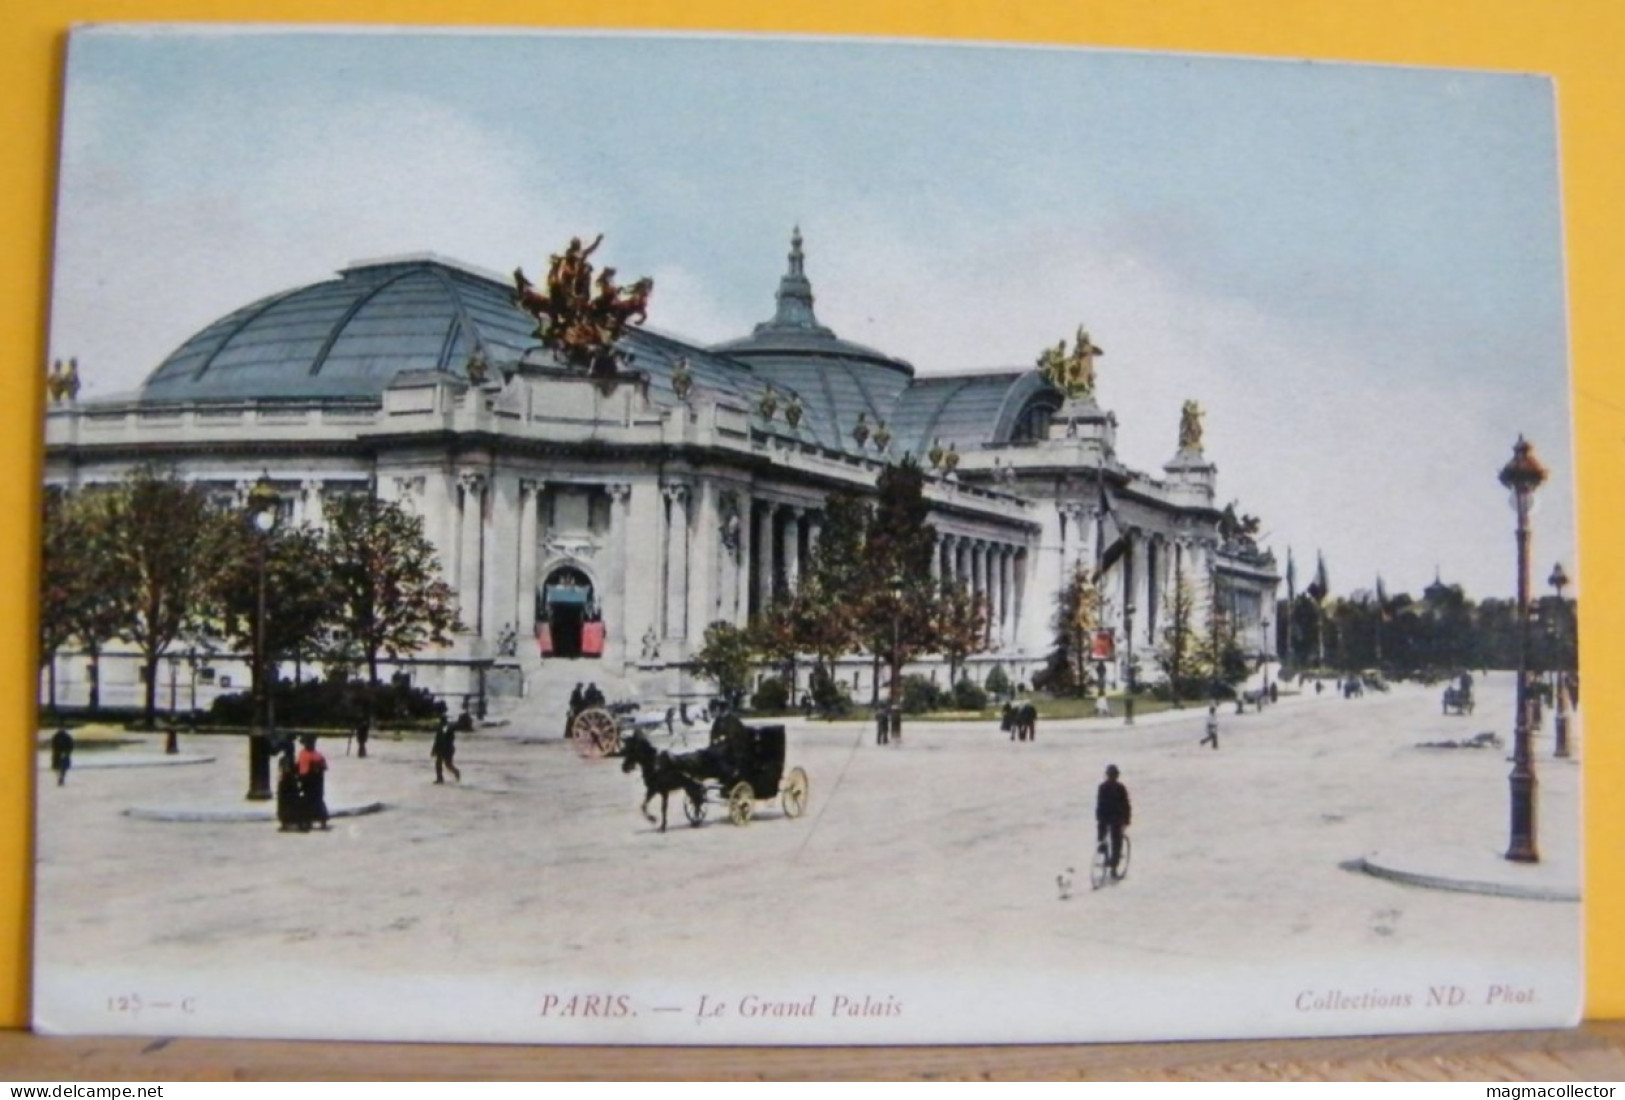 (P1) PARIGI / PARIS - LE GRAND PALAIS  - 125-C - NON VIAGGIATA 1910/20ca - Churches